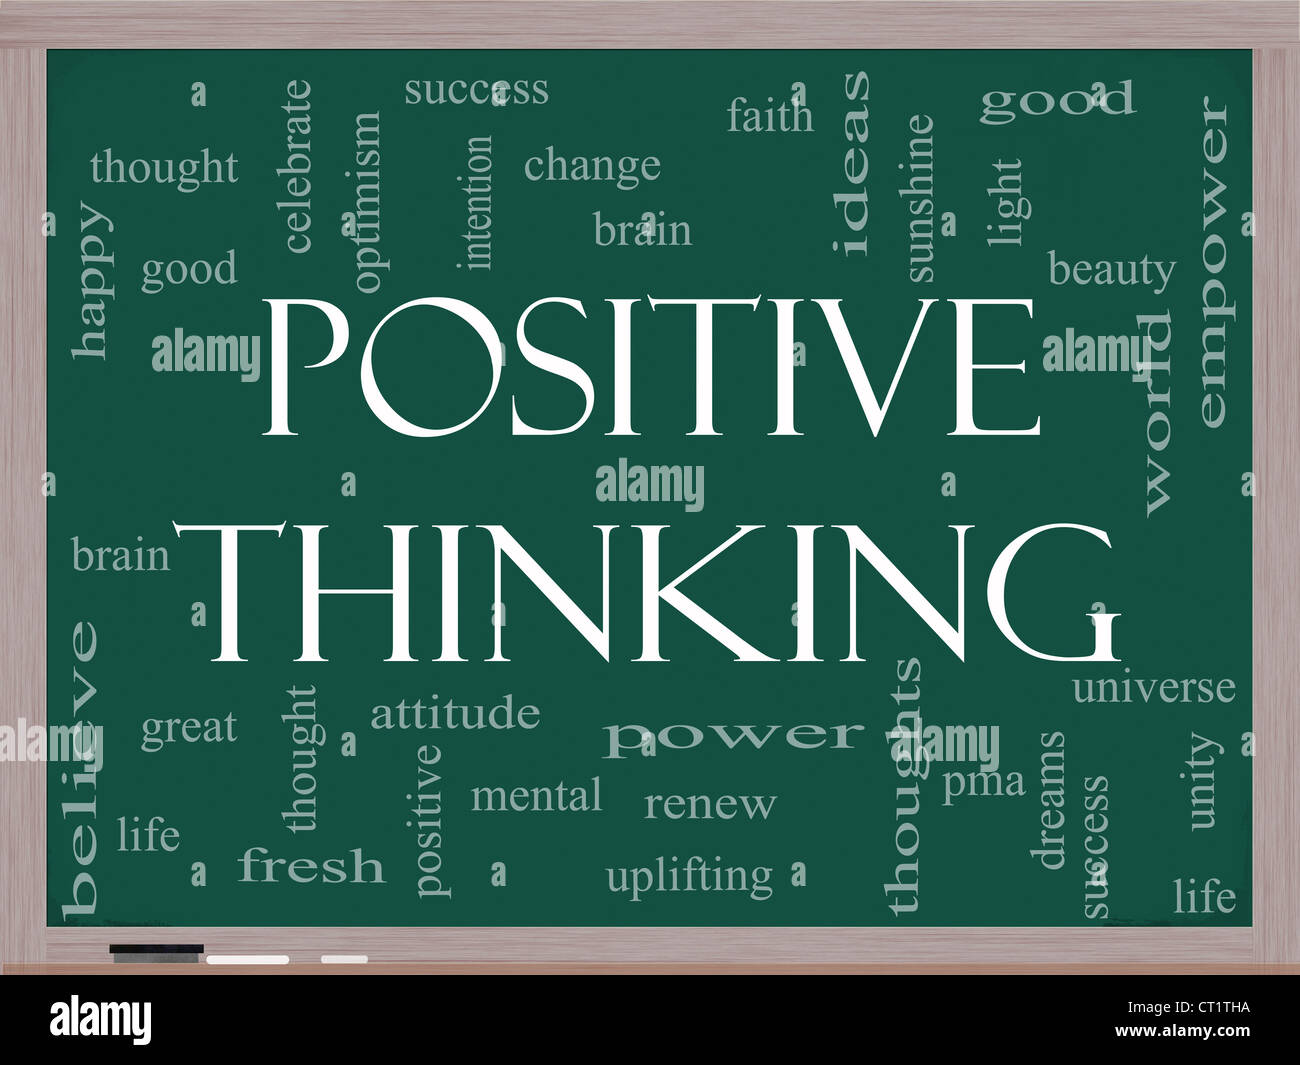 Pensamiento positivo palabra nube concepto sobre una pizarra con gran términos como buena, mental, el pensamiento, la vida, el optimismo y más Foto de stock